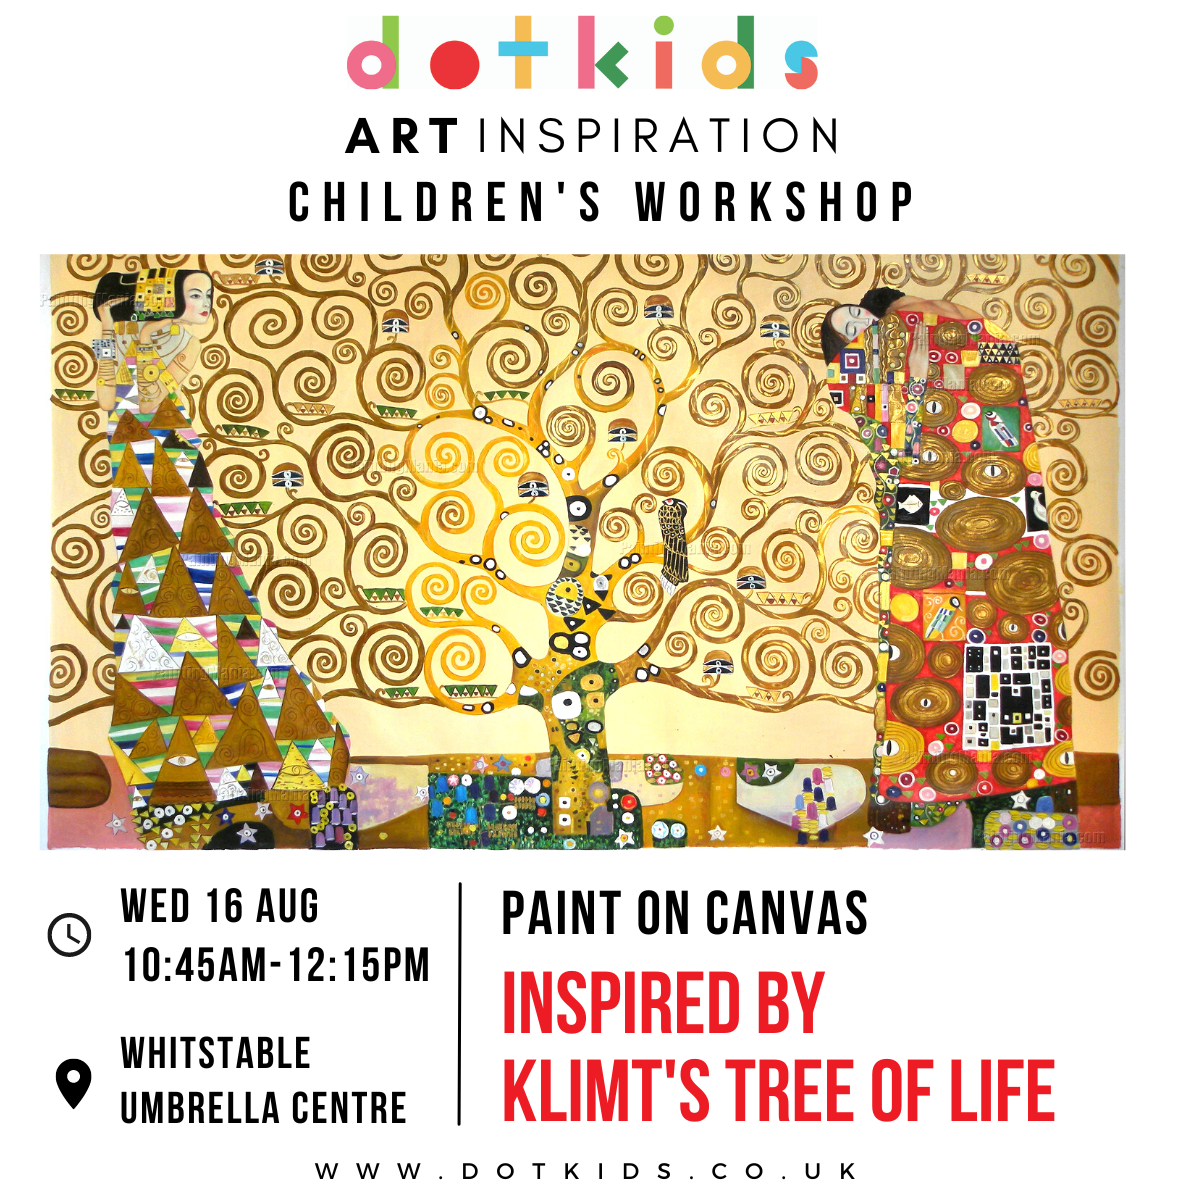 Klimt's Tree Of Life Art Inspiration Workshop For Children For children aged 5-16 years.